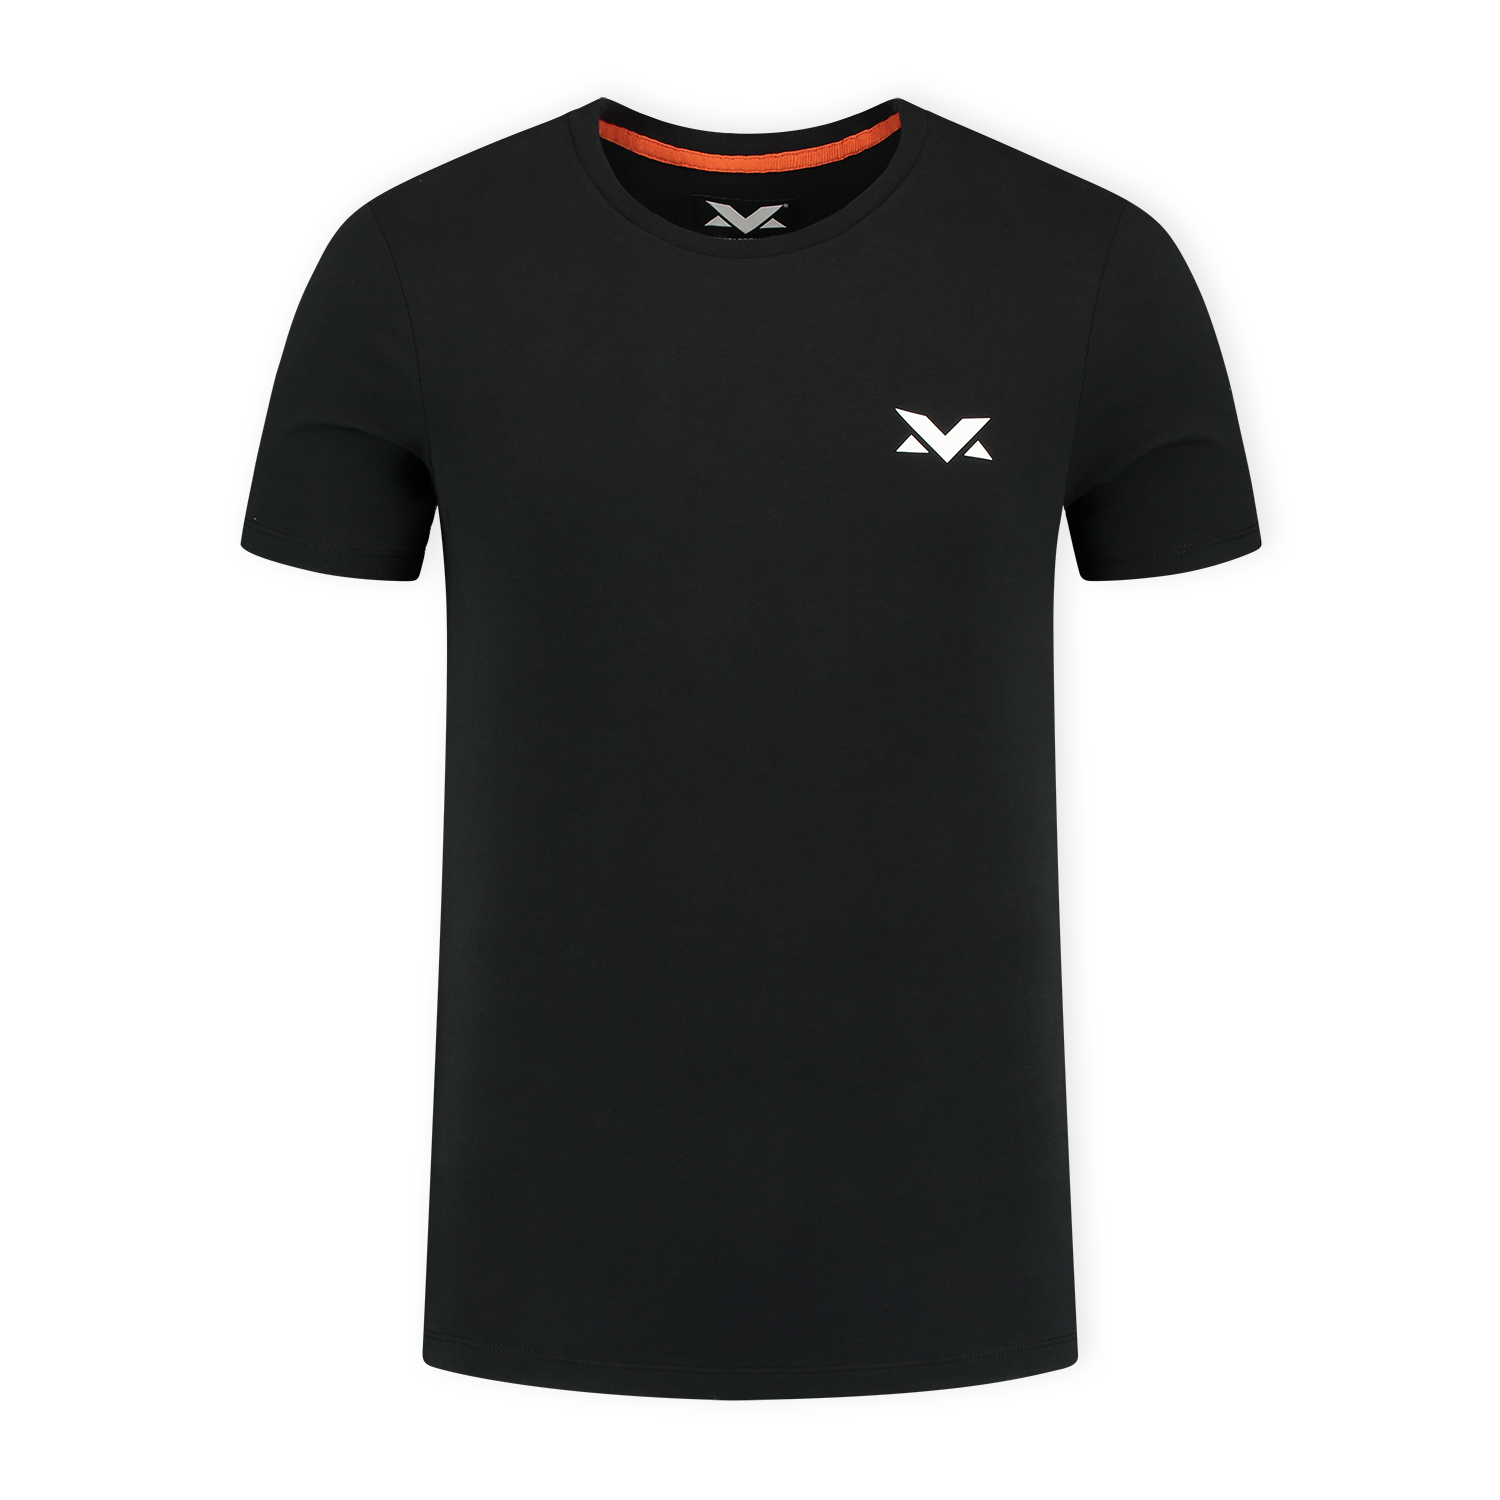 MV T-shirt The Limits - Zwart - XXXL - Max Verstappen